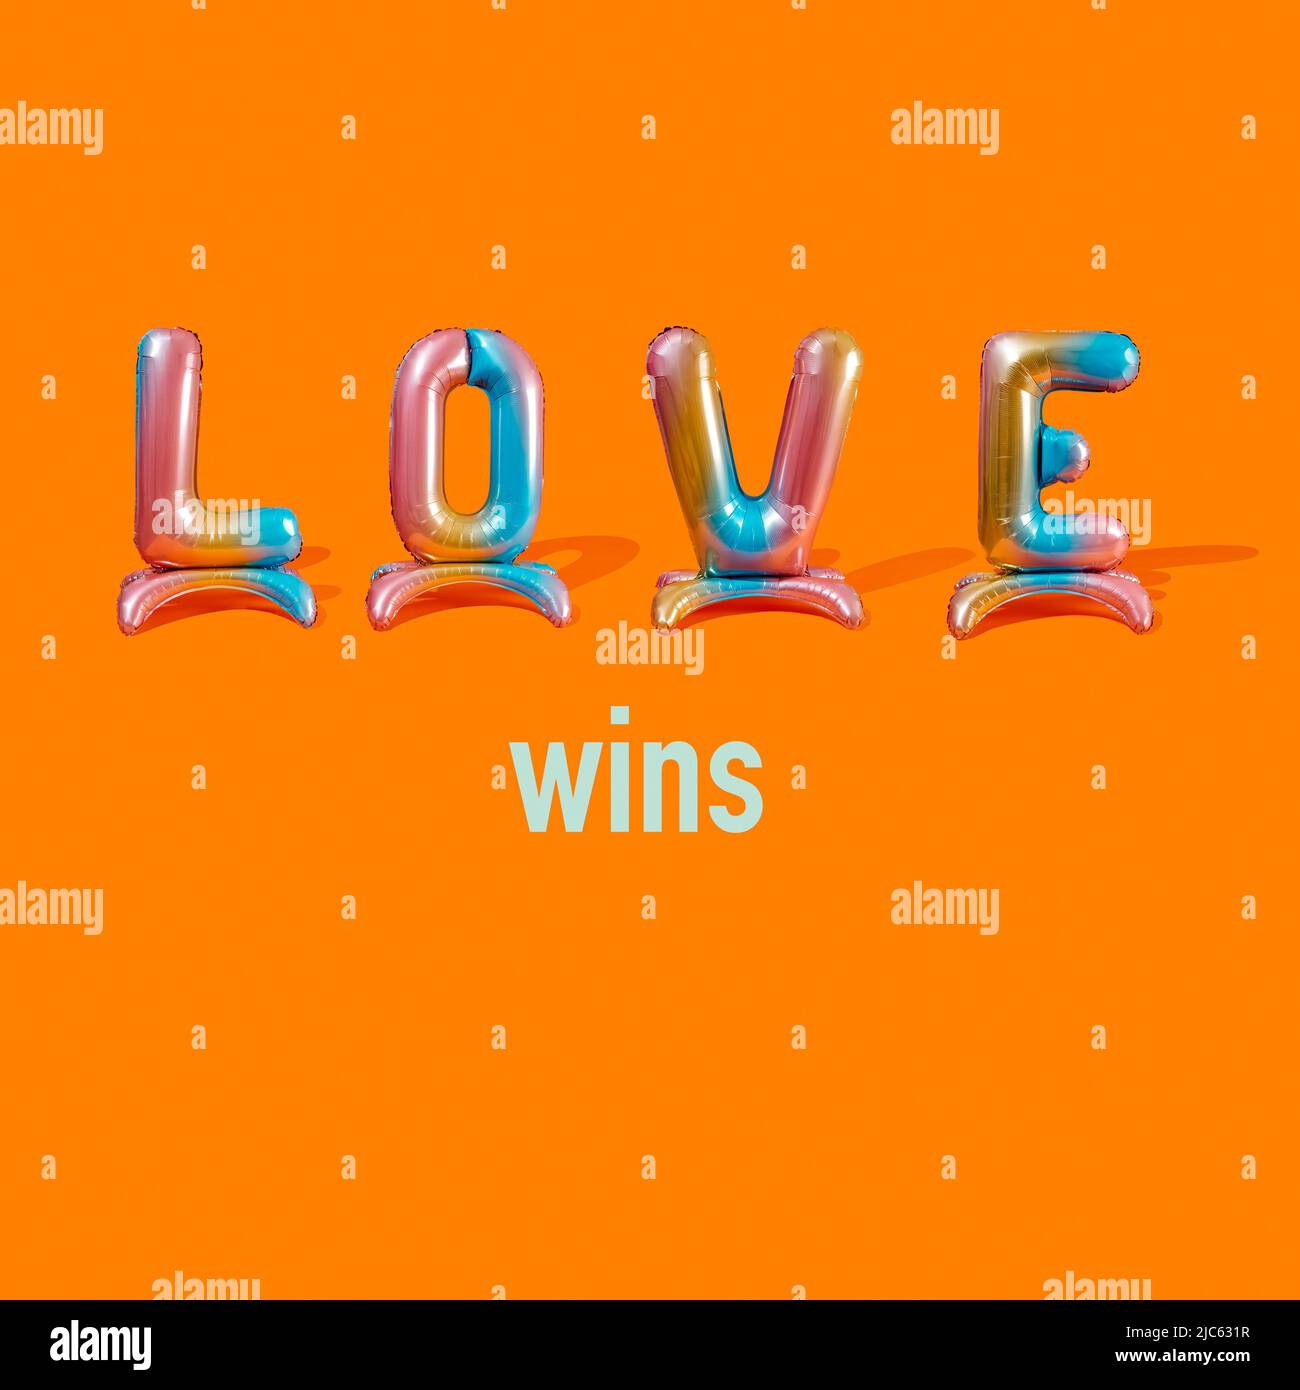 Text Love gewinnt auf einem orangefarbenen Hintergrund, mit dem Wort Love aus vier bunten, buchstabenförmigen Ballons Stockfoto